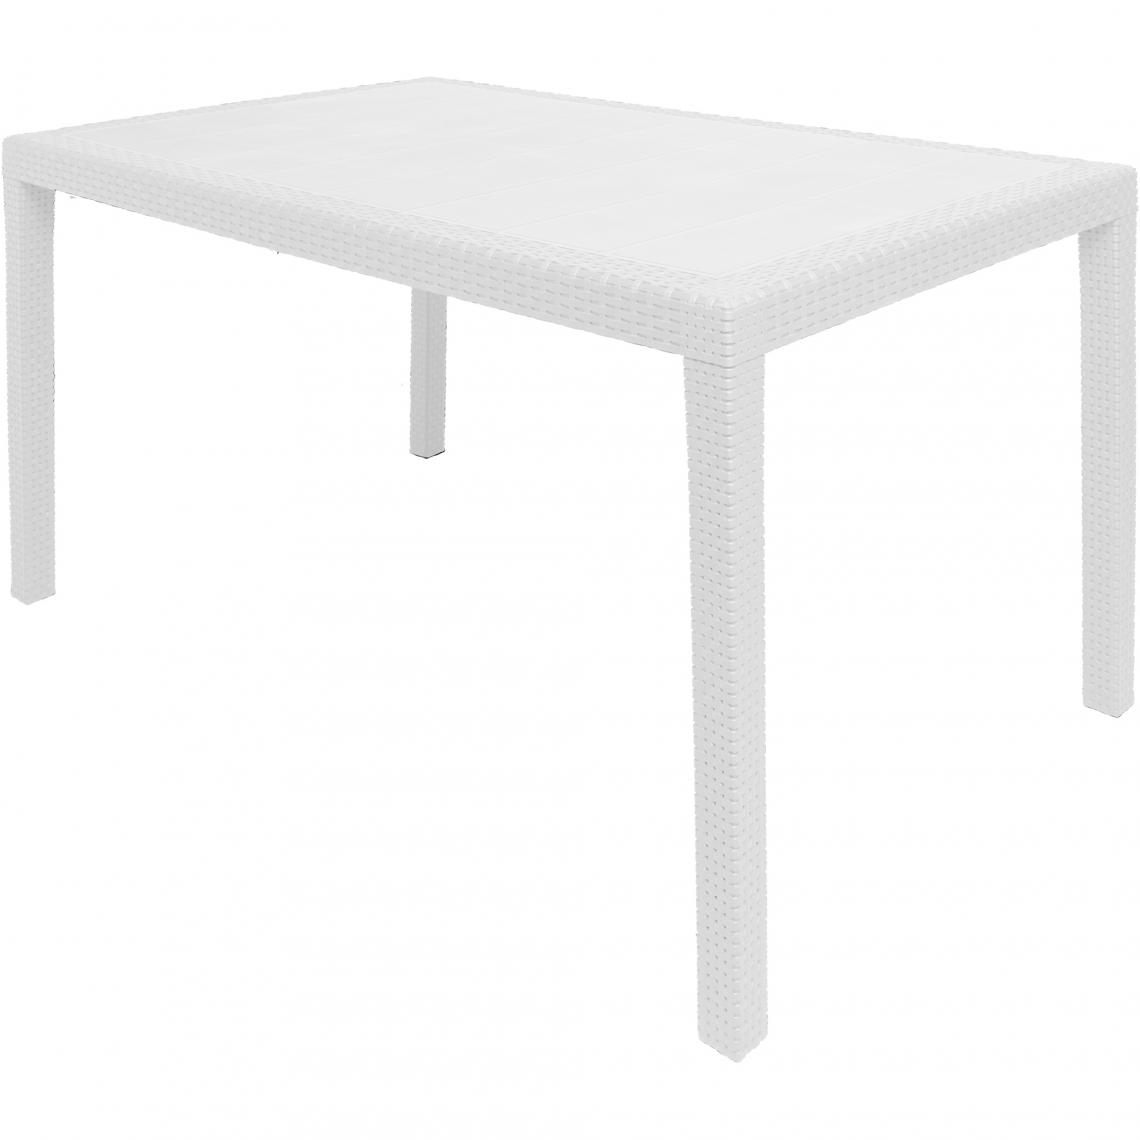 Alter - Table d'extérieur rectangulaire, Structure en résine dure effet rotin, Fabriqué en Italie, 150 x 90 x 72 cm, Couleur Blanc - Tables à manger